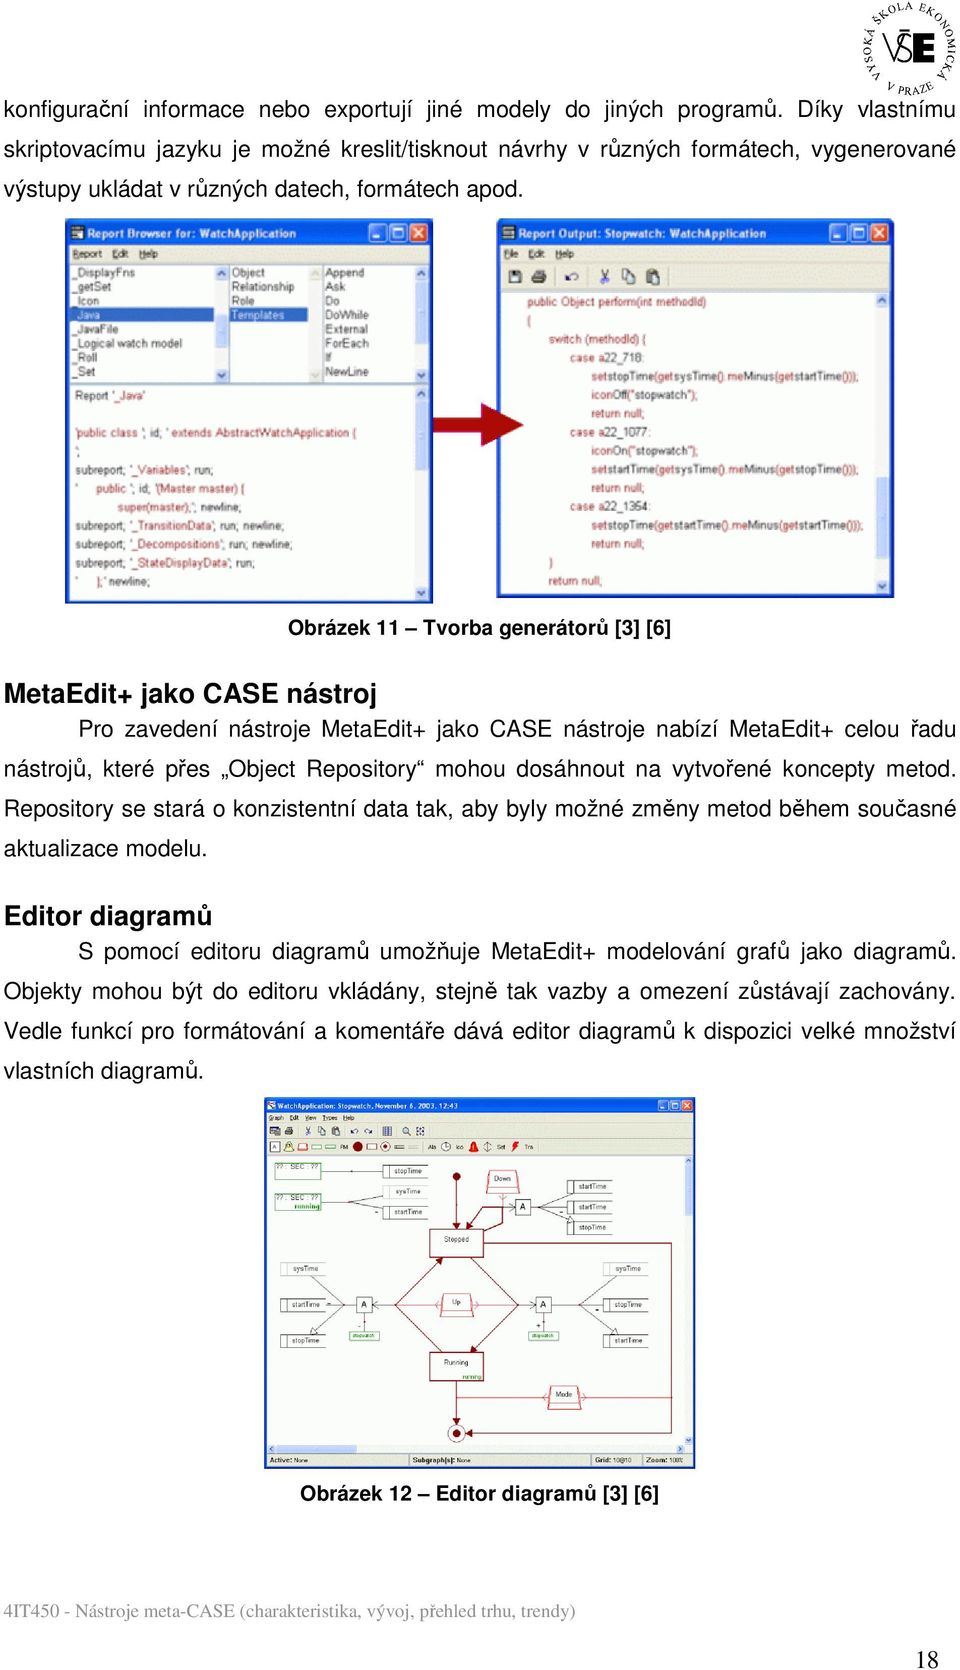 Obrázek 11 Tvorba generátorů [3] [6] MetaEdit+ jako CASE nástroj Pro zavedení nástroje MetaEdit+ jako CASE nástroje nabízí MetaEdit+ celou řadu nástrojů, které přes Object Repository mohou dosáhnout